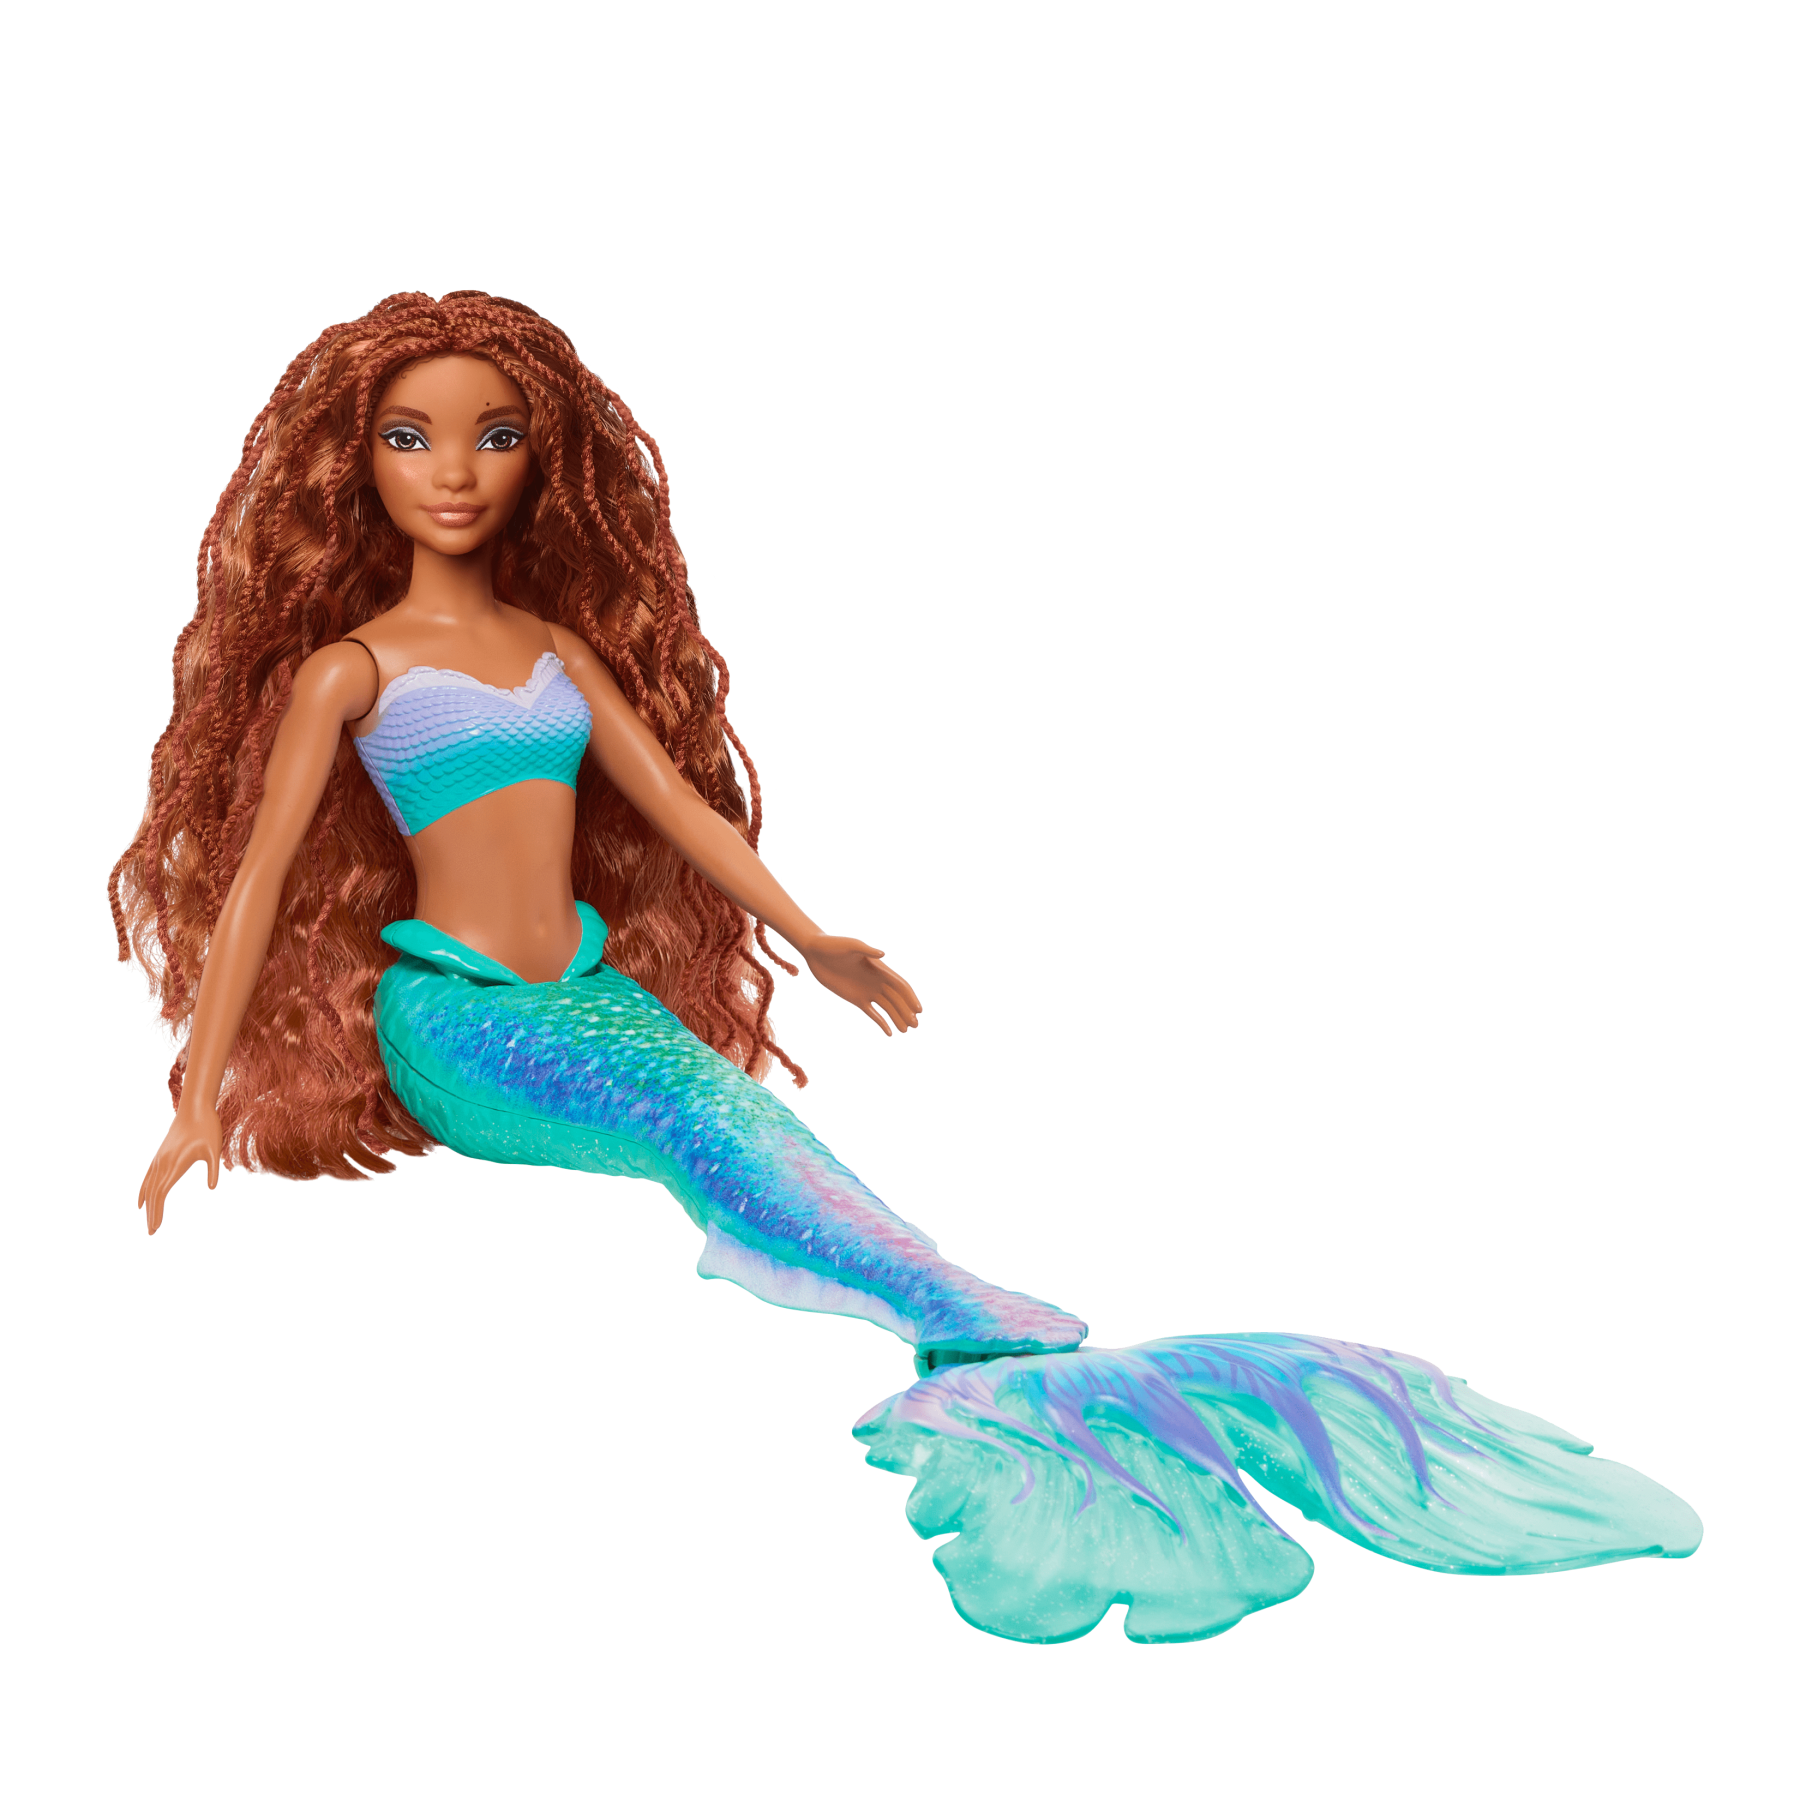 Disney la sirenetta - ariel, bambola con l'iconica coda da sirena